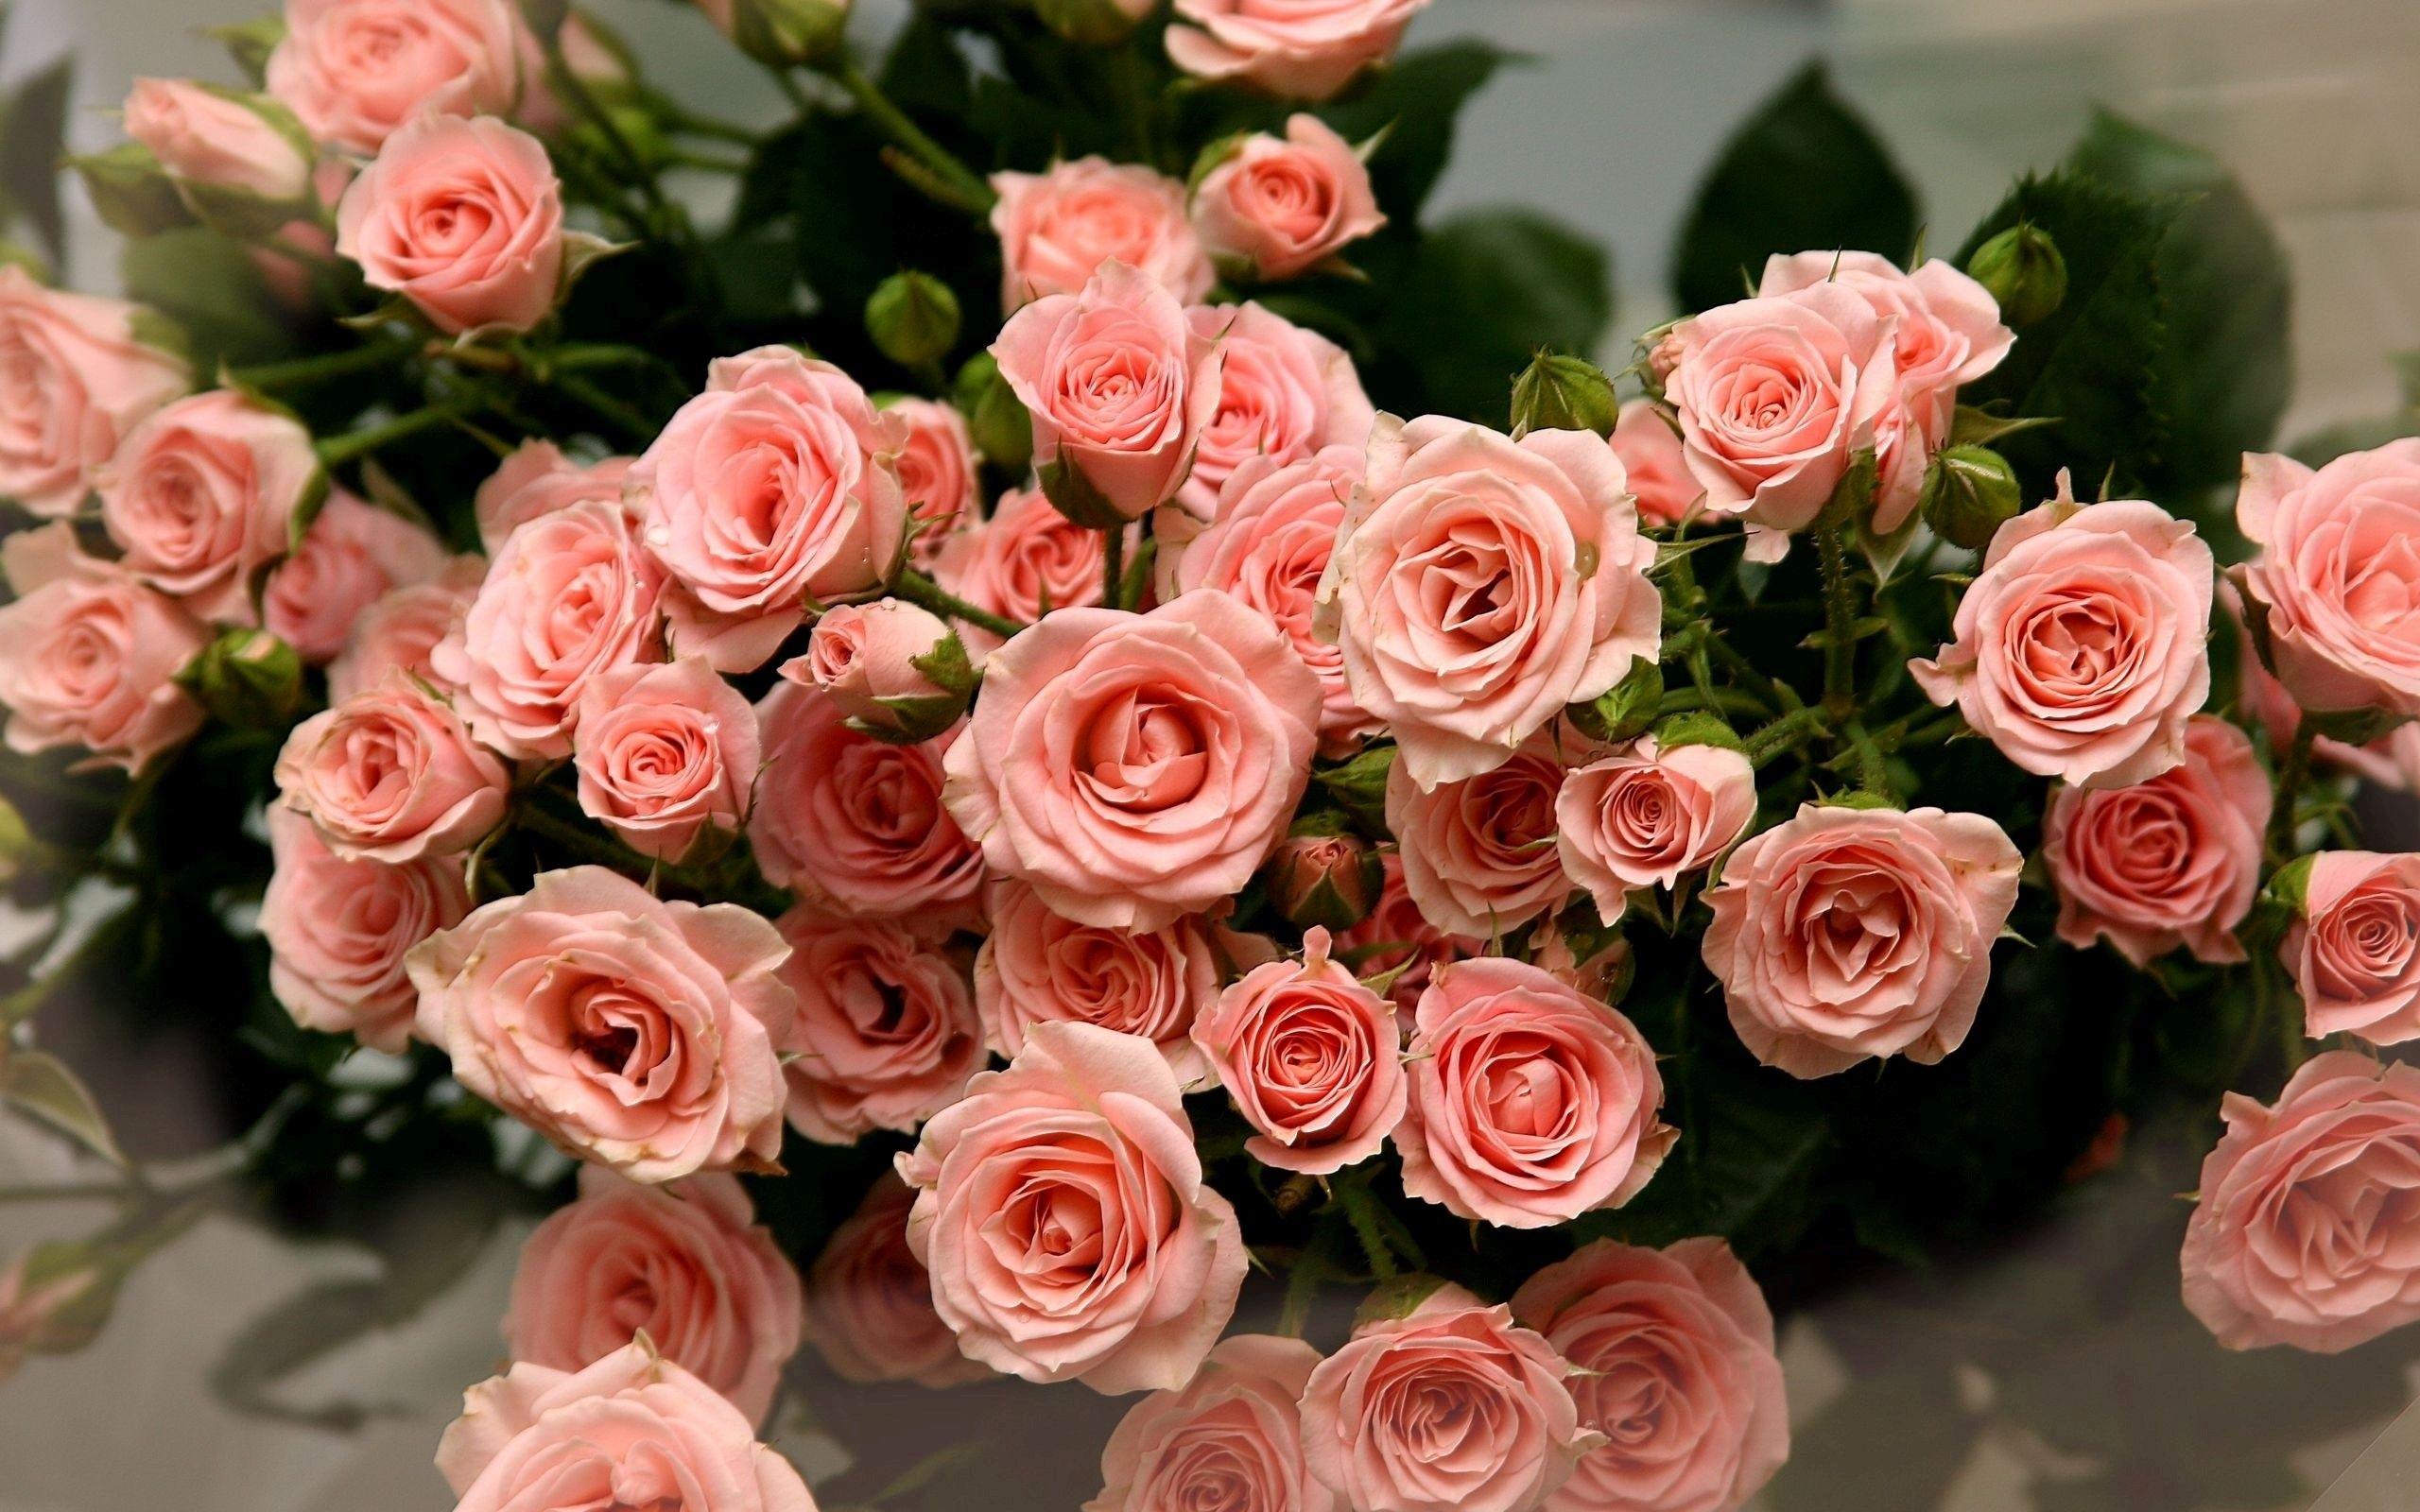 Stunning Pink Rose Image